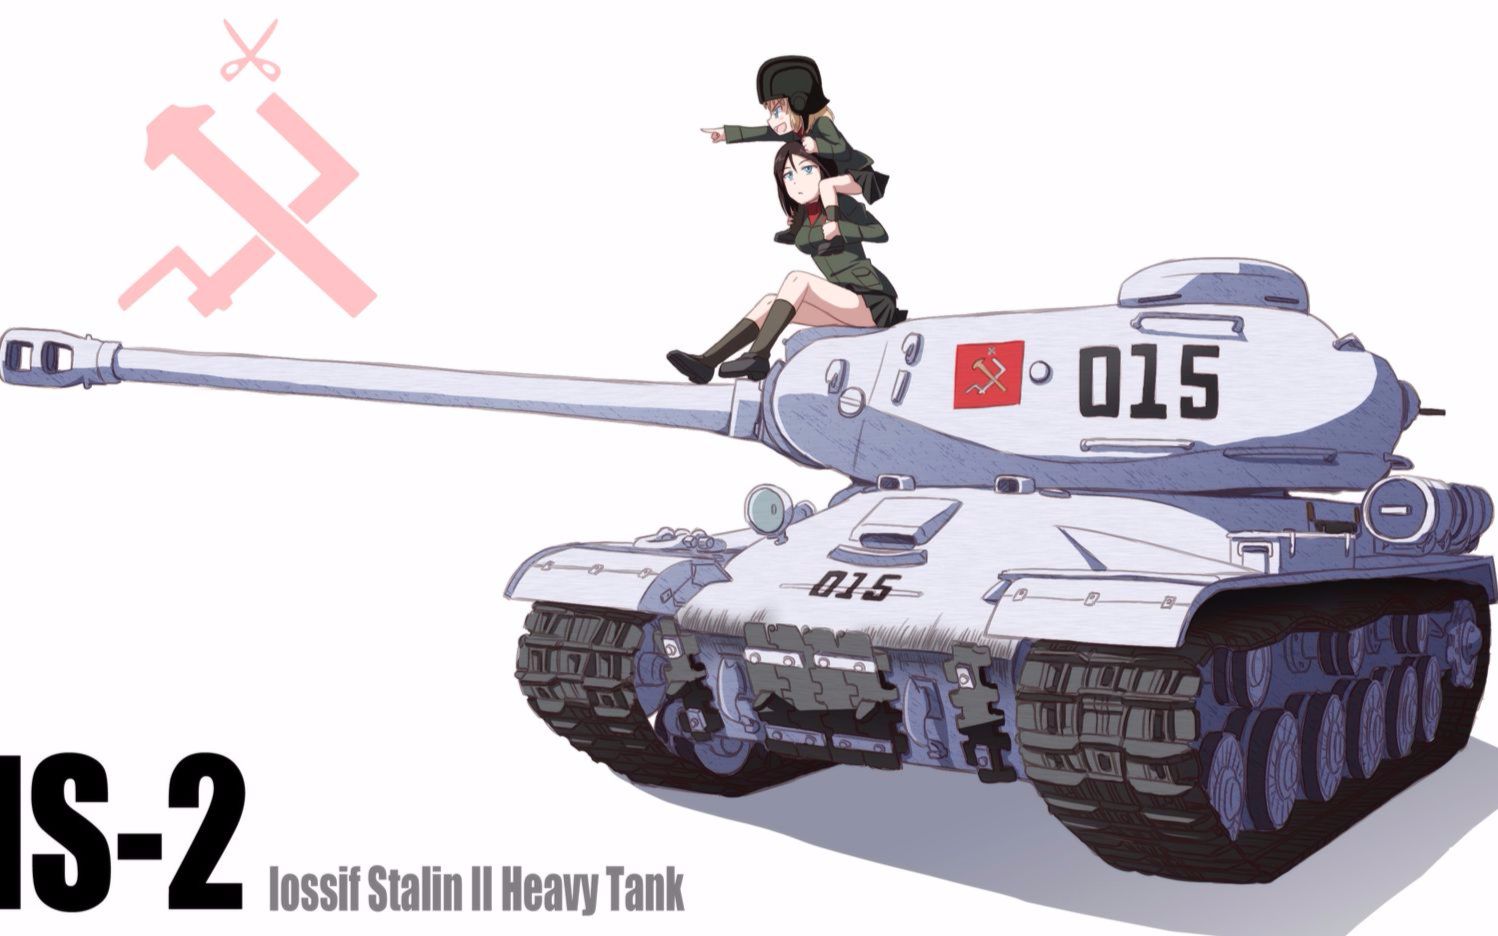 少女与战车喀秋莎俄语图片